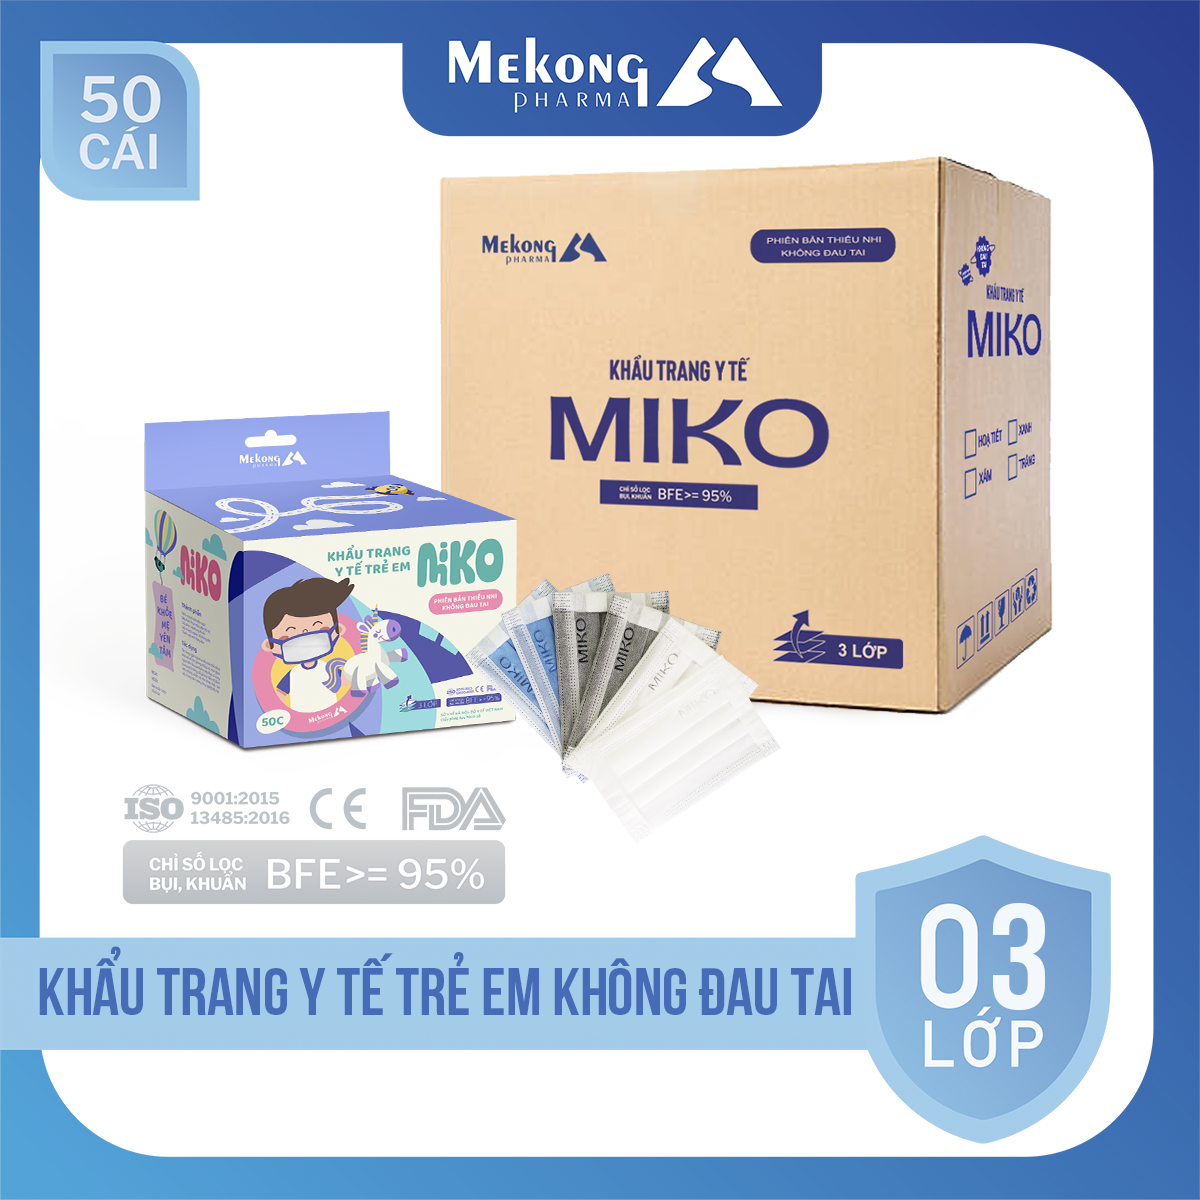 1 Kiện 50 hộp khẩu trang trẻ em MIKO cao cấp, có dây đeo mềm không đau tai